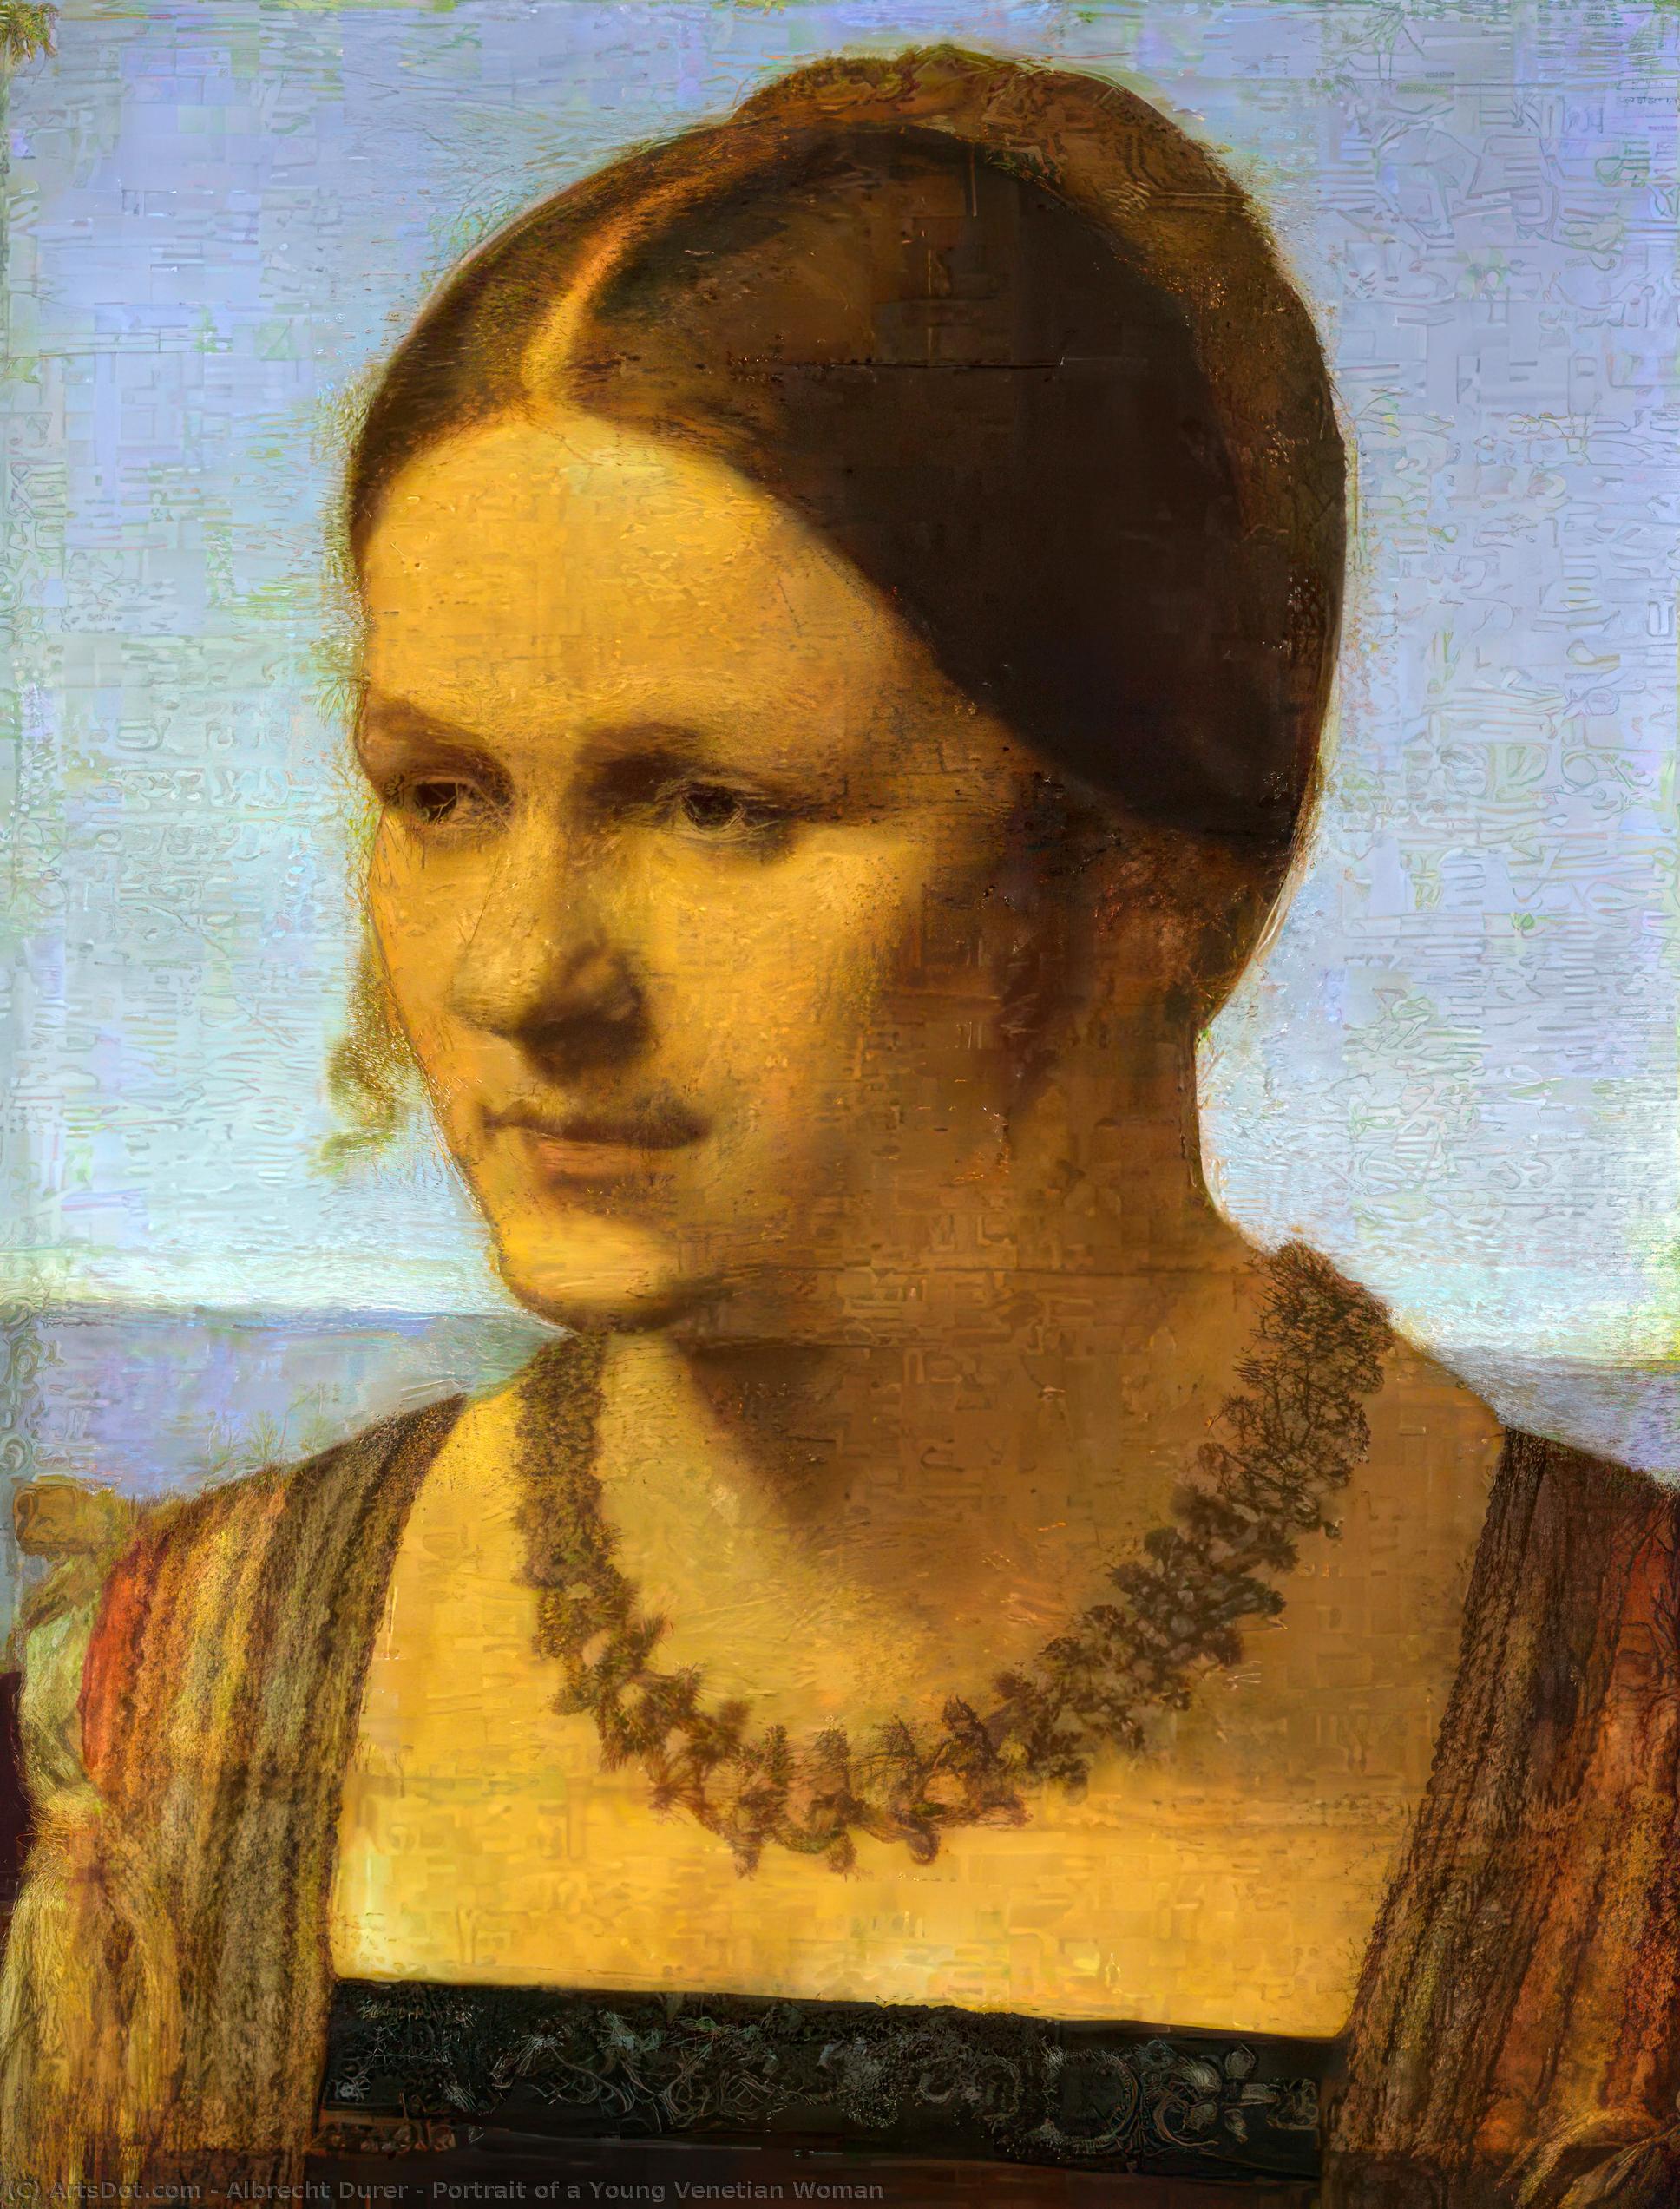 Achat Reproductions De Qualité Musée Portrait d`une jeune femme vénitienne, 1507 de Albrecht Durer (1471-1528, Italy) | ArtsDot.com